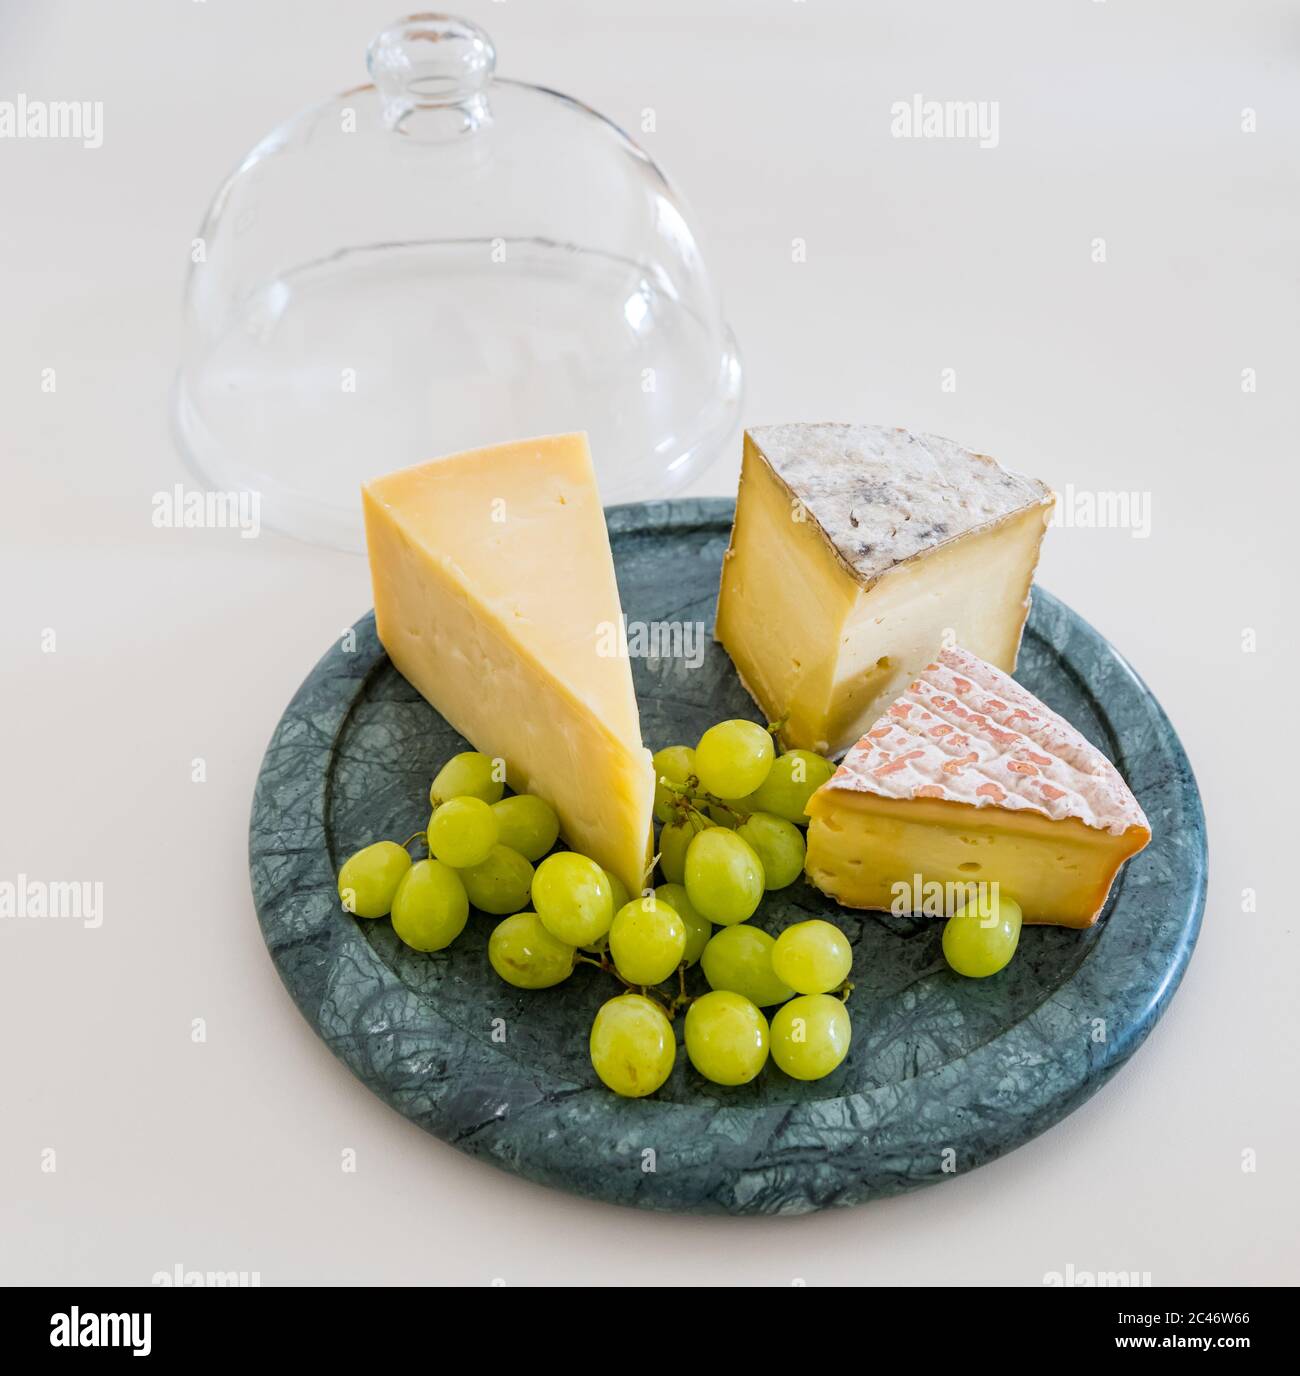 Cheesboard avec cheddar de l'île de Mull, fromage Gorwydd Caerphilly et fromage irlandais Gubbeé avec raisins verts sur comptoir de cuisine blanc Banque D'Images